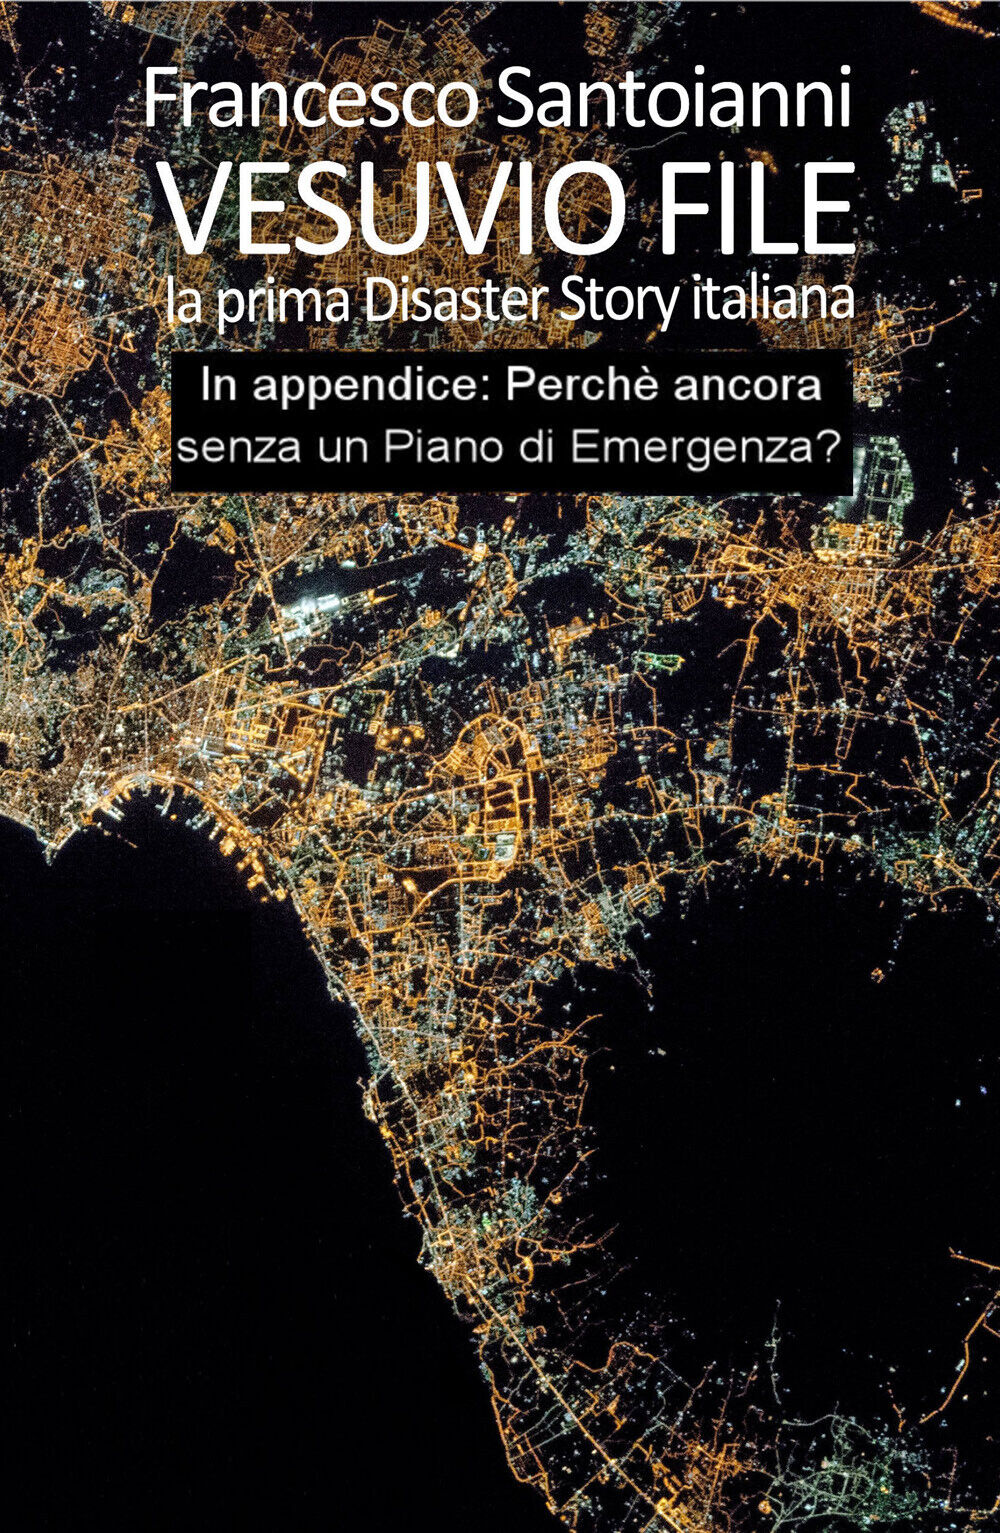 Vesuvio file. La prima disaster story italiana di Francesco Santoianni,  2020,  